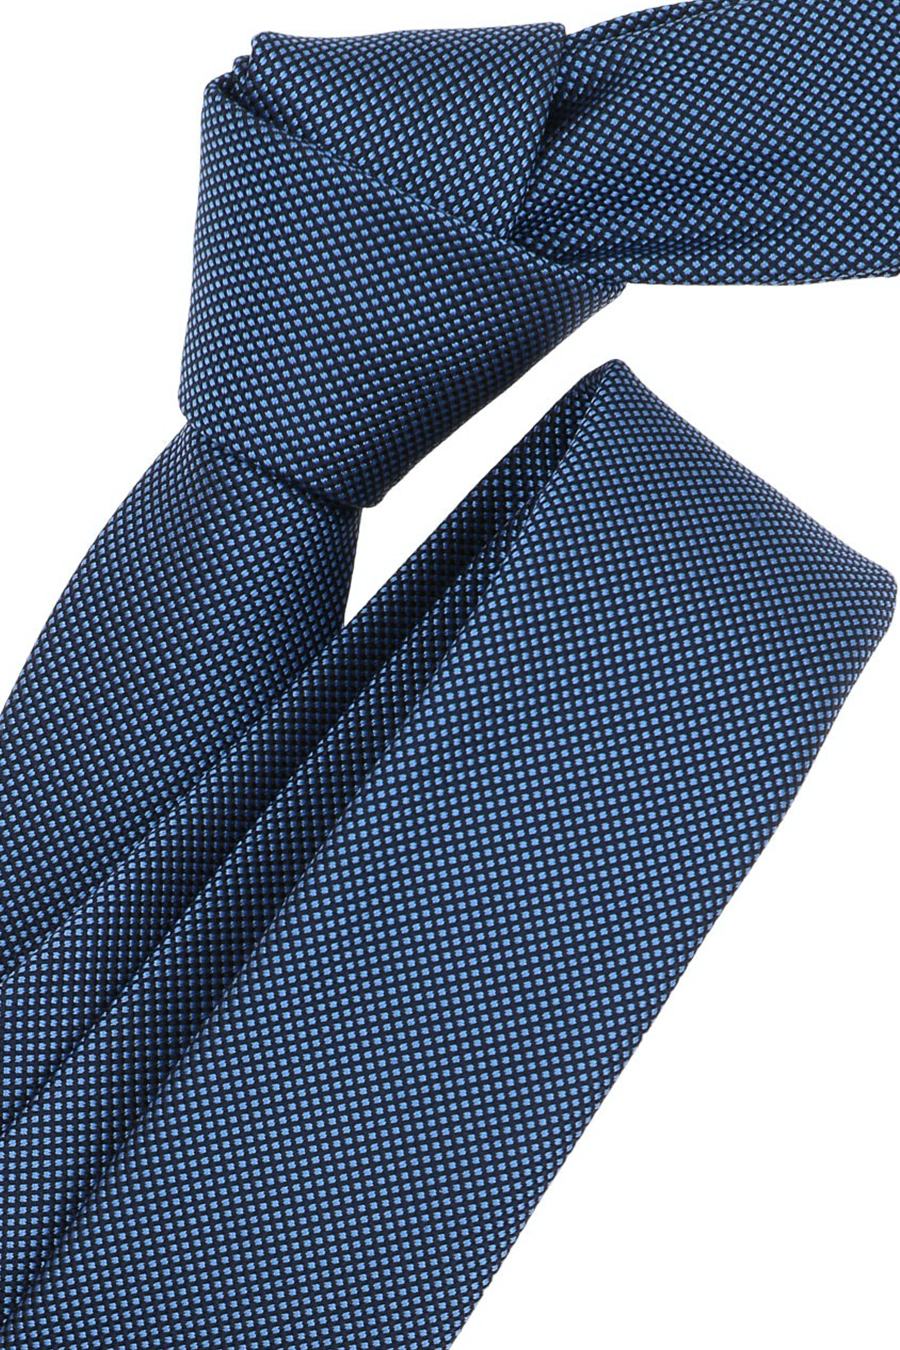 VENTI Krawatte aus Muster dunkelblau und Seide Polyester